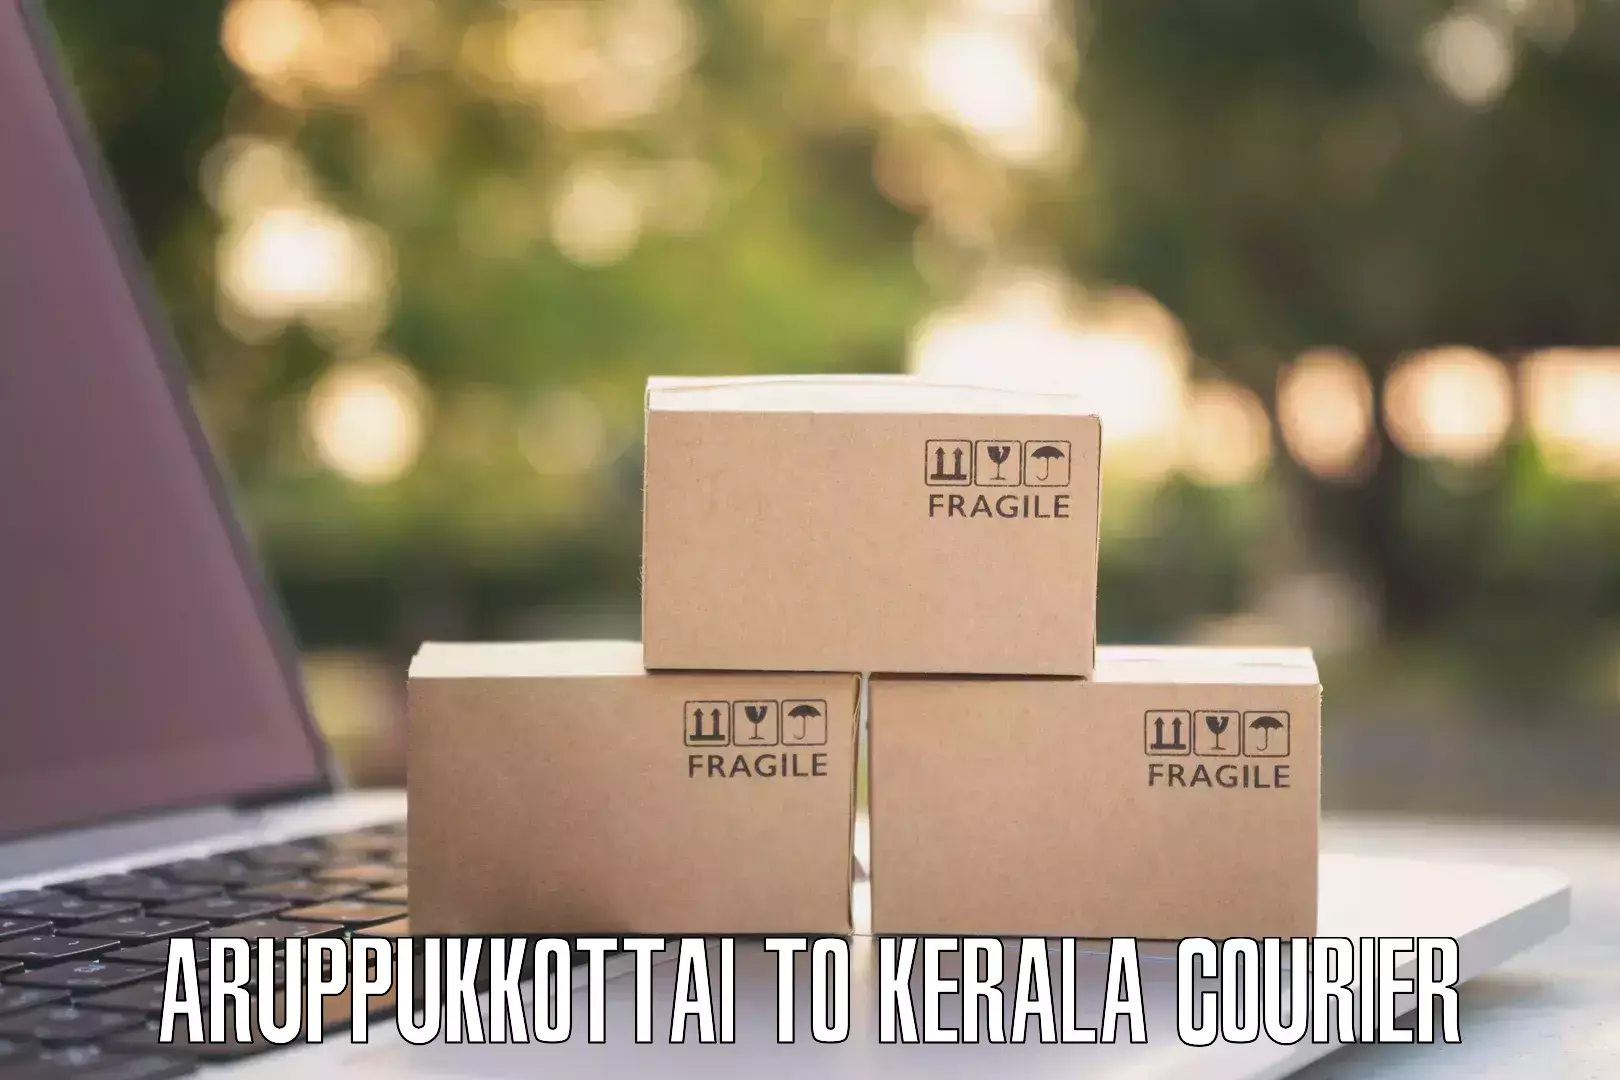 High-priority parcel service in Aruppukkottai to Karunagappally